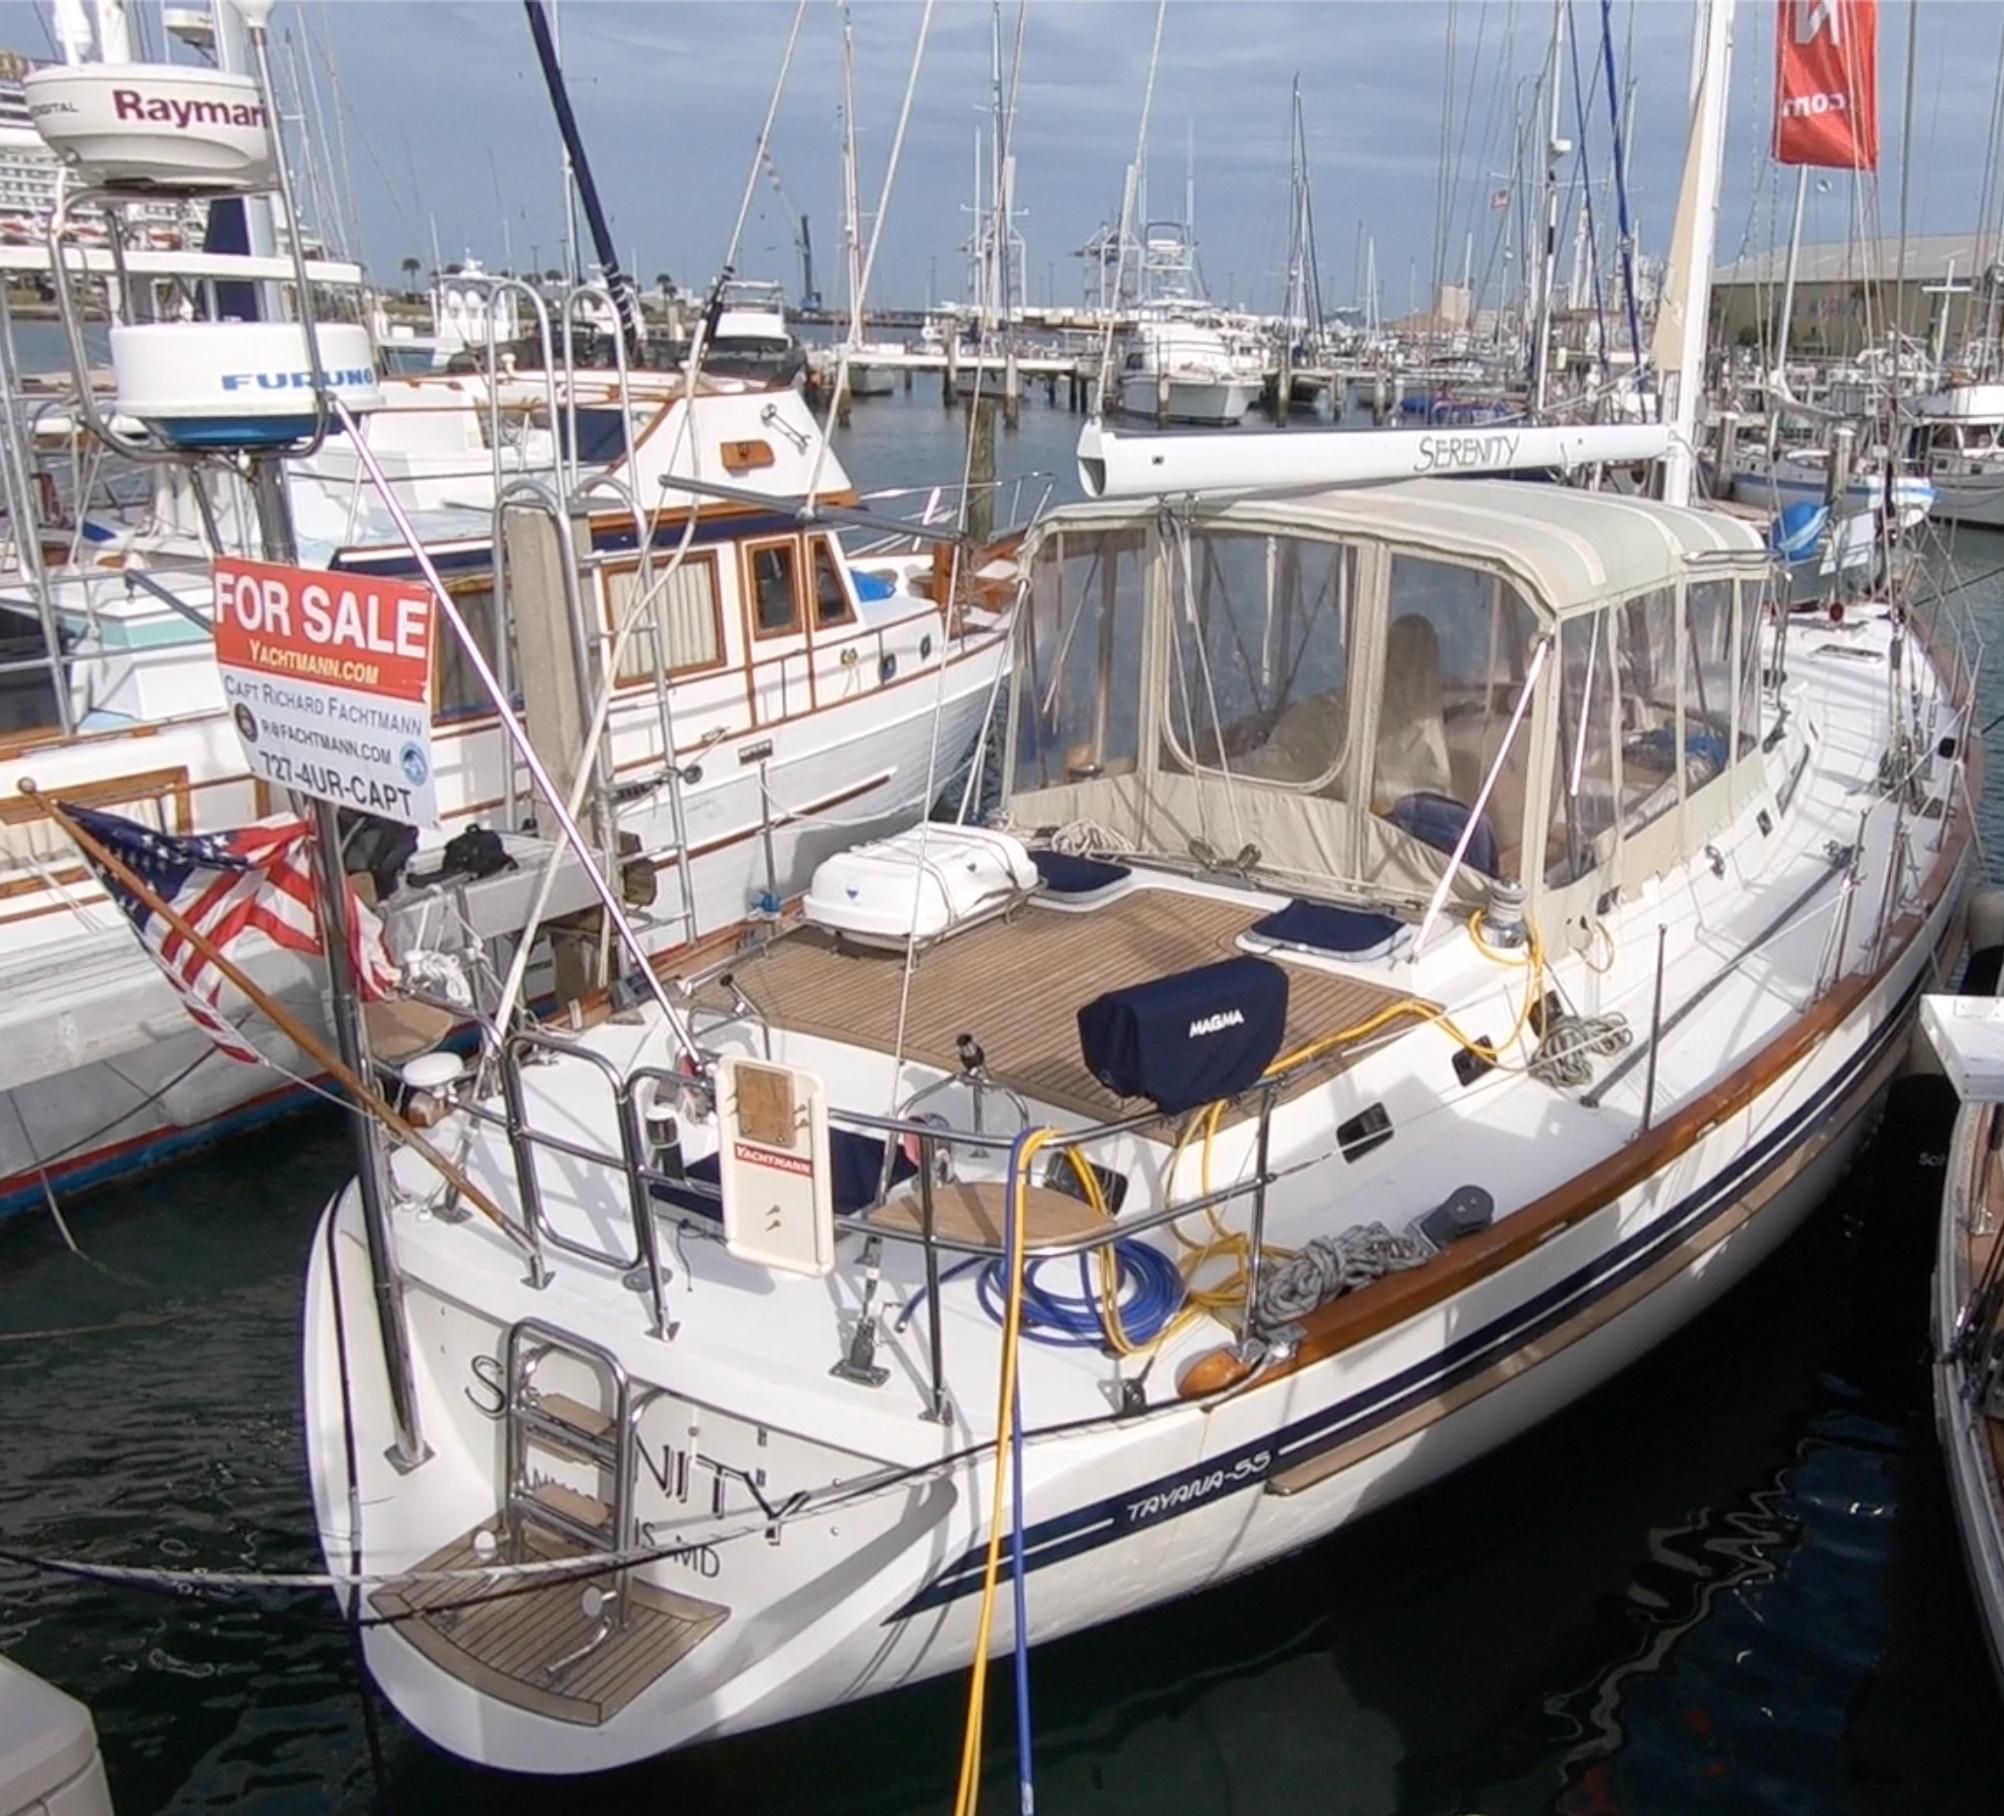 tayana yachts for sale australia